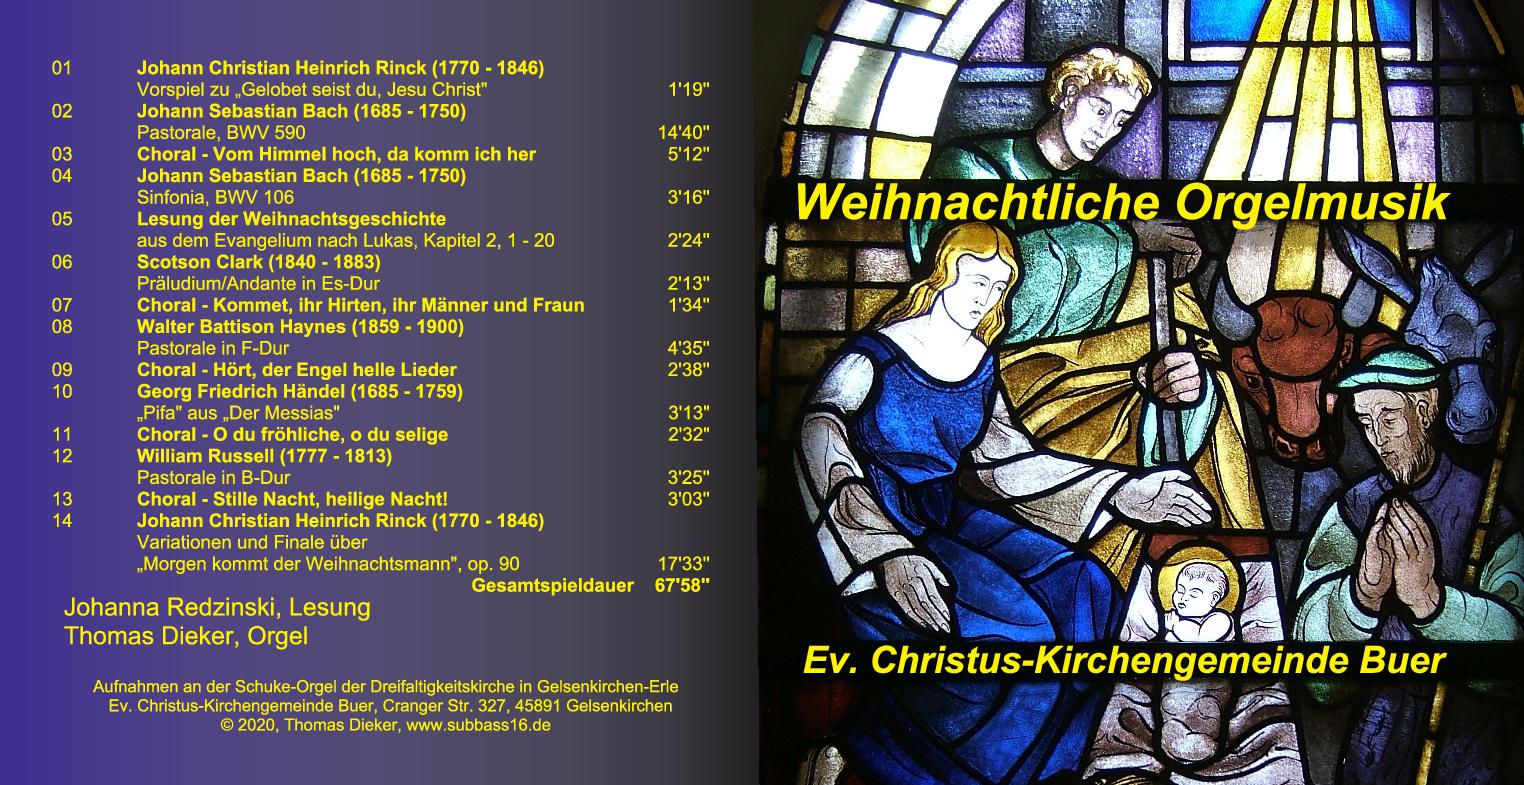 CD 3: Weihnachtliche Orgelmusik